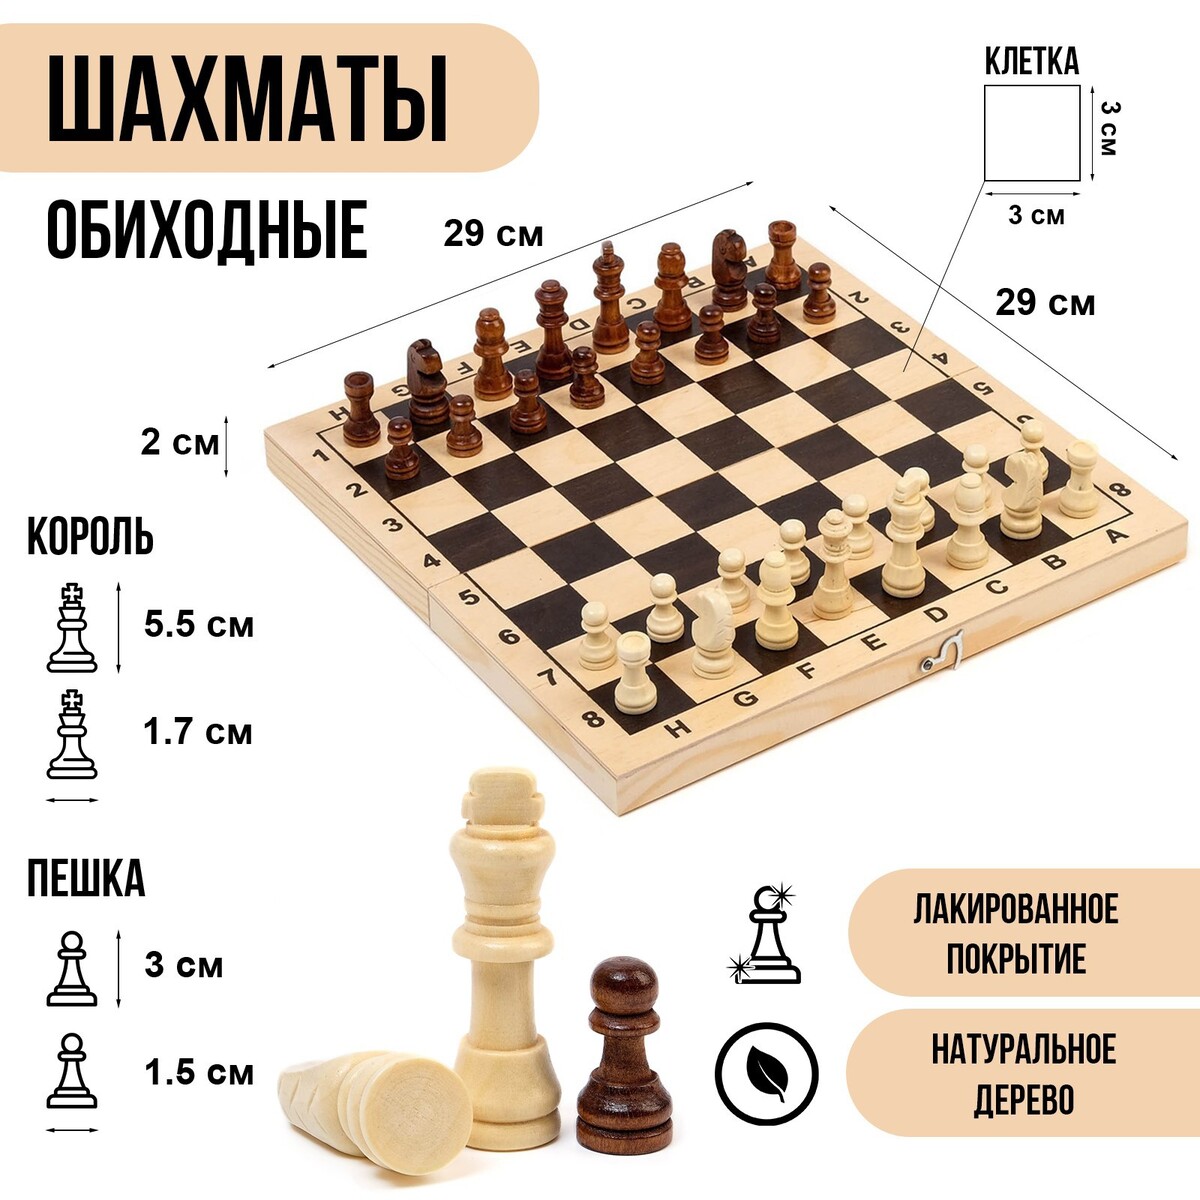 Шахматы деревянные обиходные 29 х 29 см, король h-5.5 см, пешка h-3 см научиться играть в шахматы легко пошаговое руководство для детей и родителей